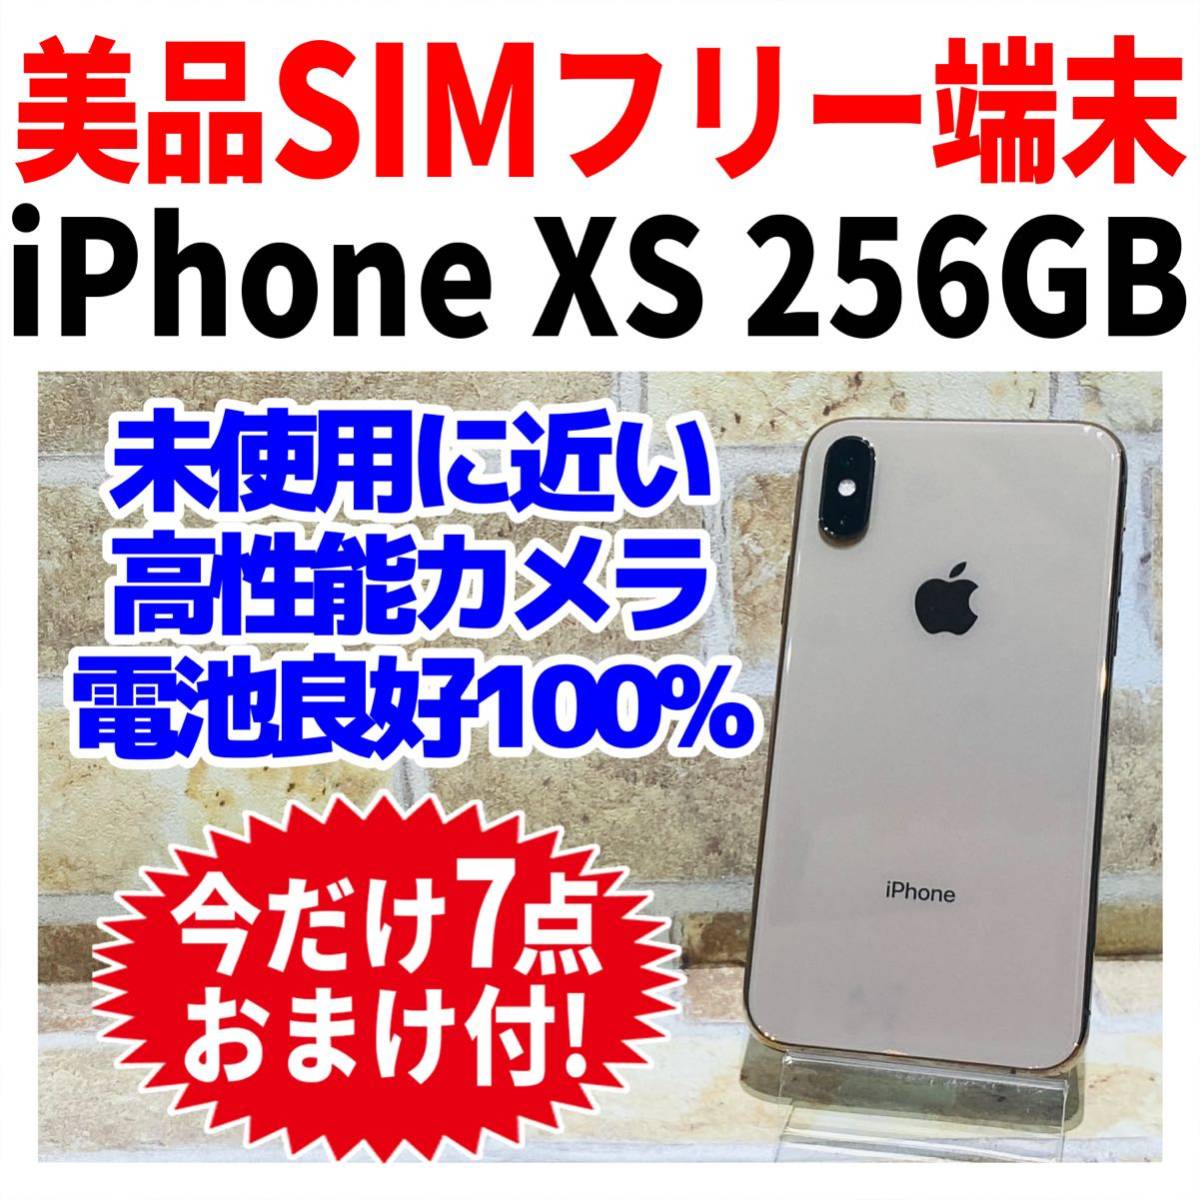 美品 SIMフリー iPhone XS 256GB GOLD バッテリー新品-